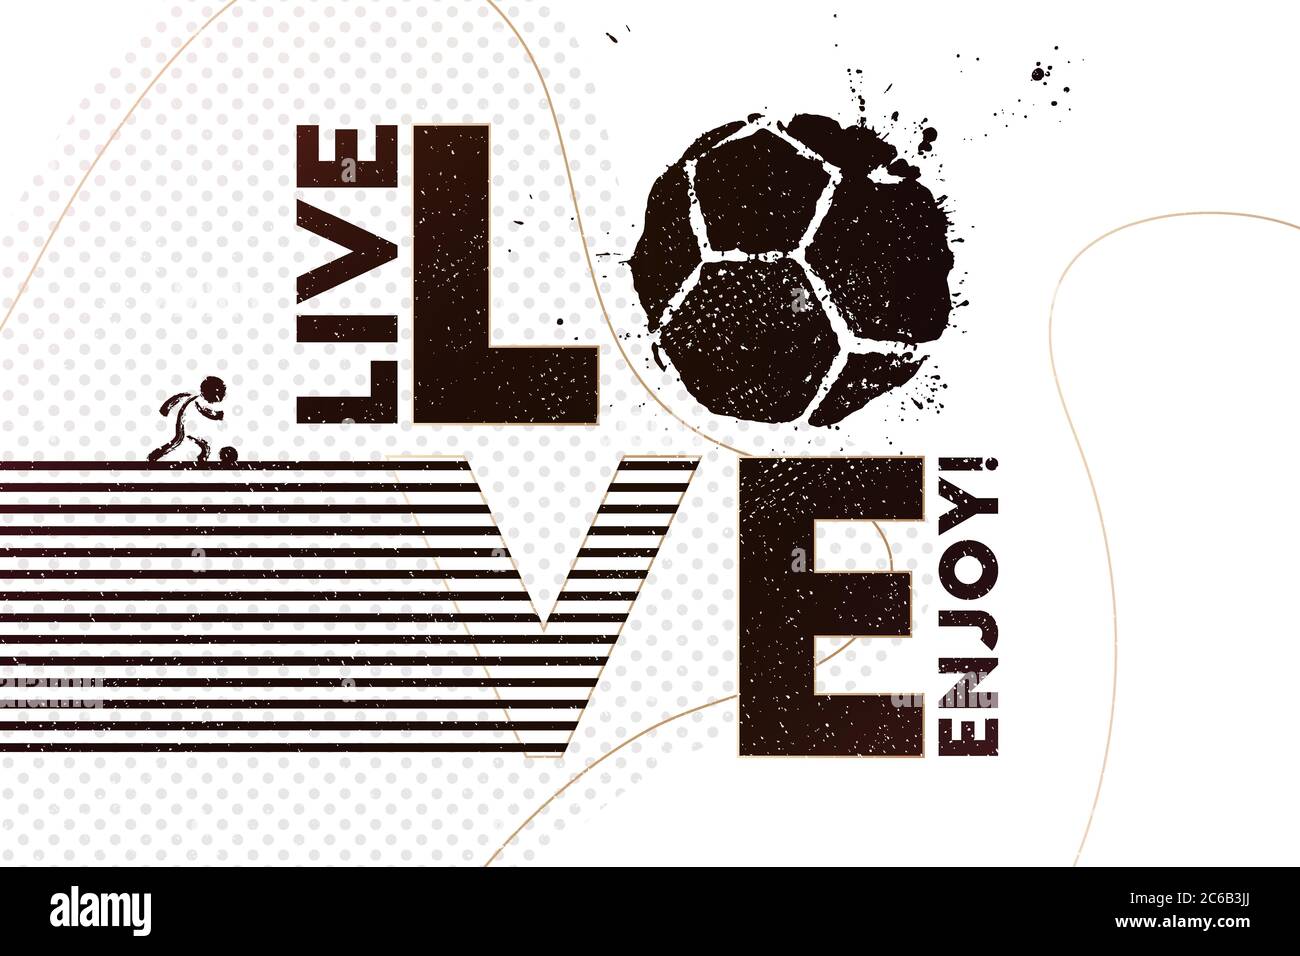 Vivi, ama, divertiti con il calcio. Illustrazione vettoriale di sfondo astratto del calcio con stampa a pallina da calcio grunge per il tuo design Illustrazione Vettoriale